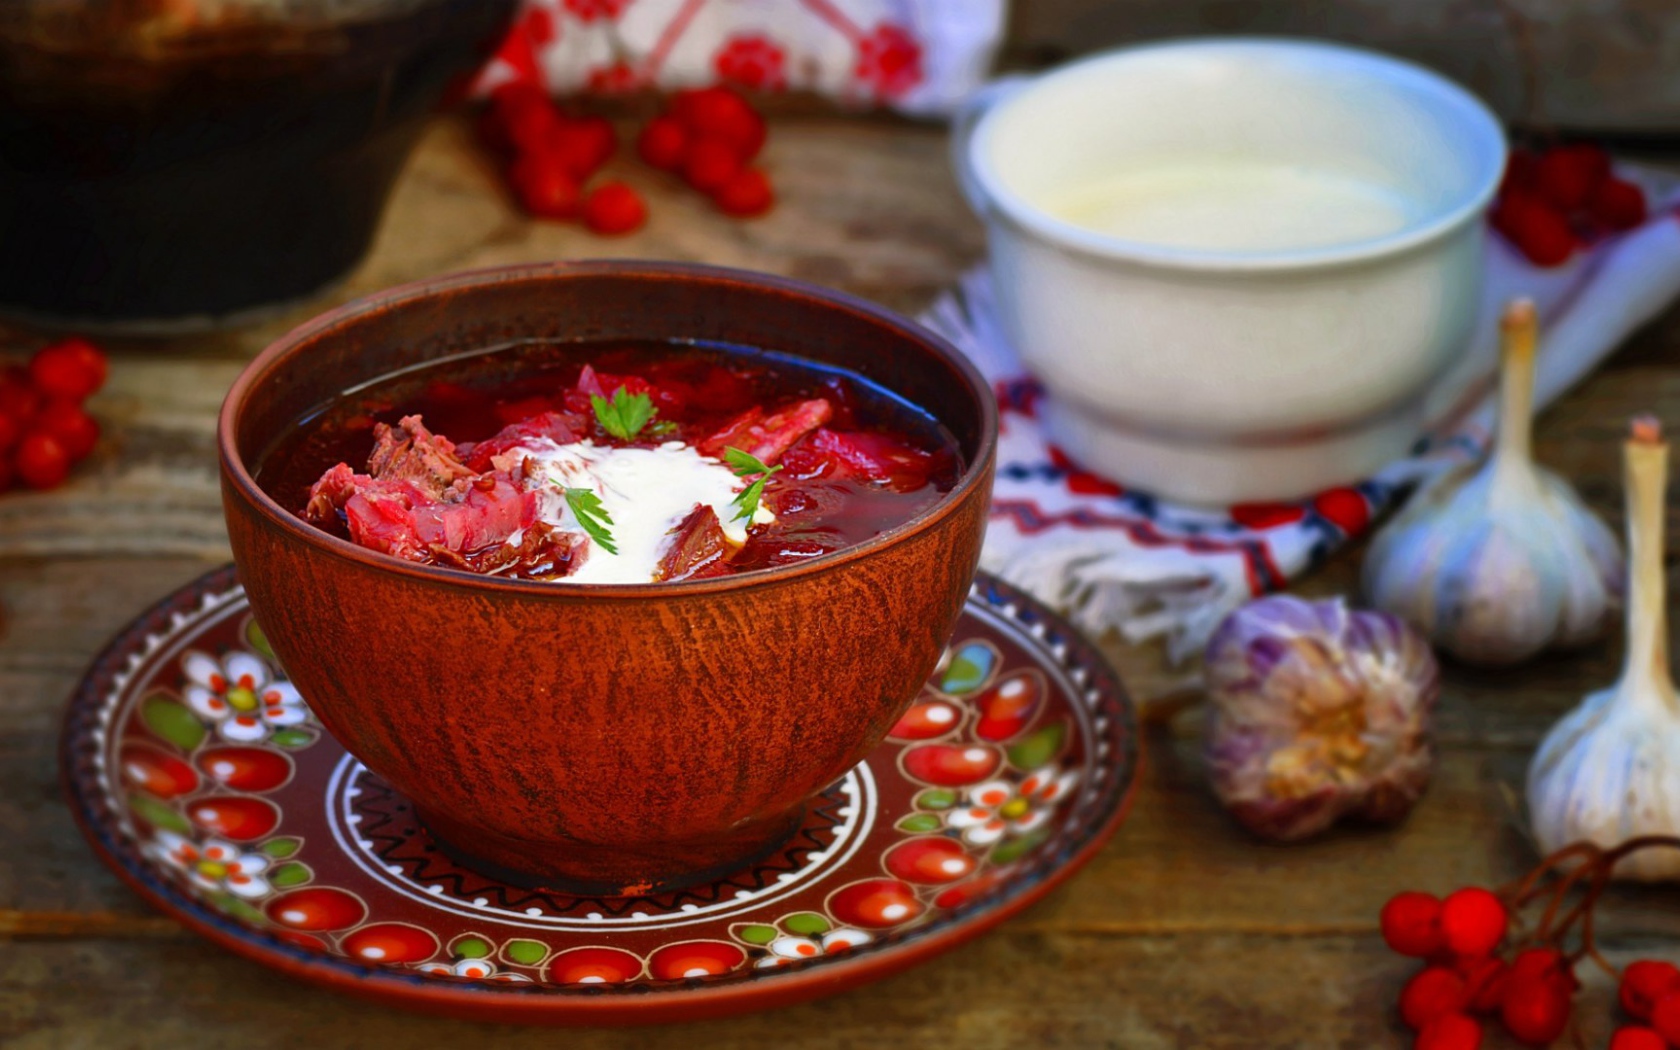 Dish flavored borscht